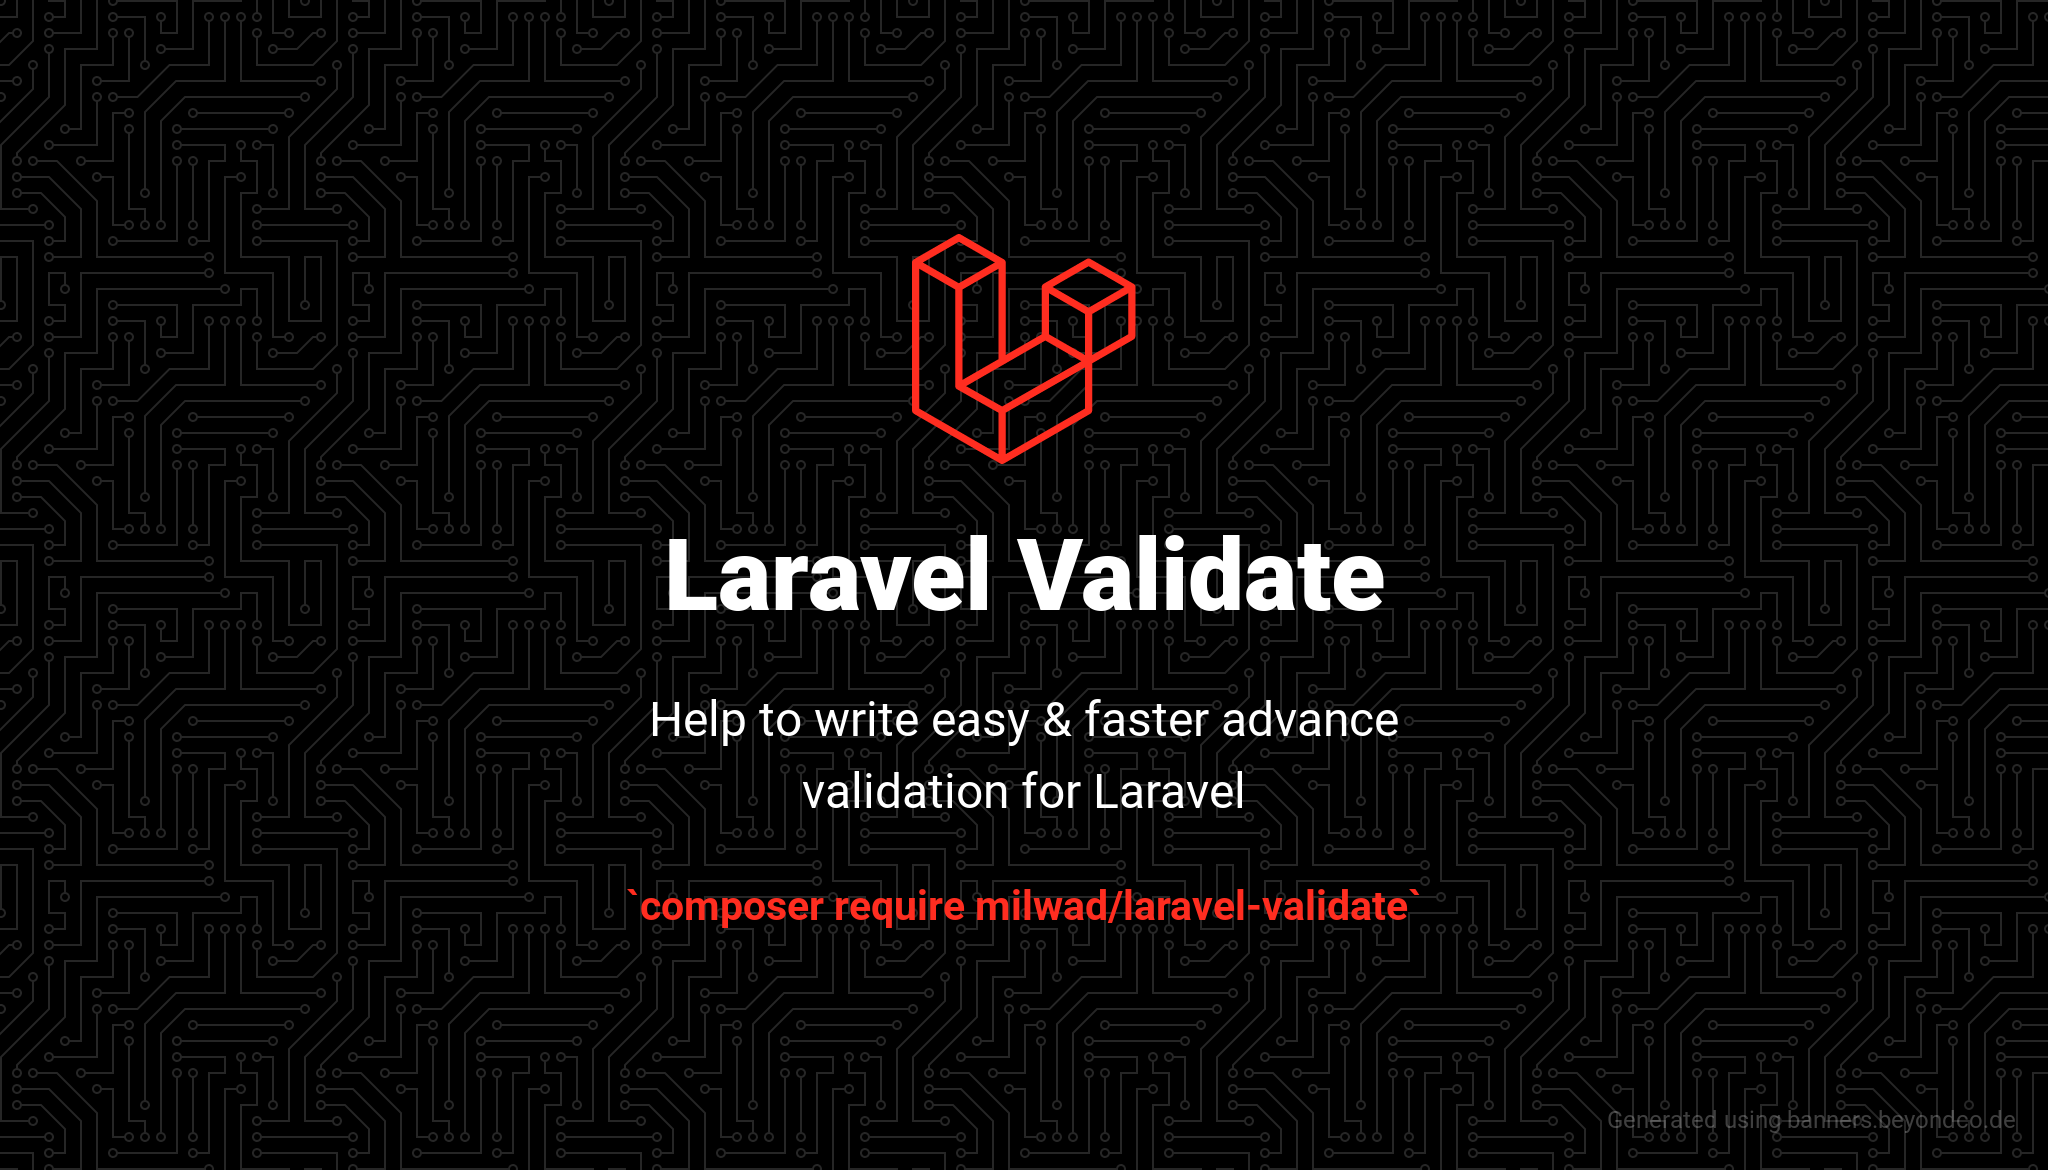 laravel-validate-banner